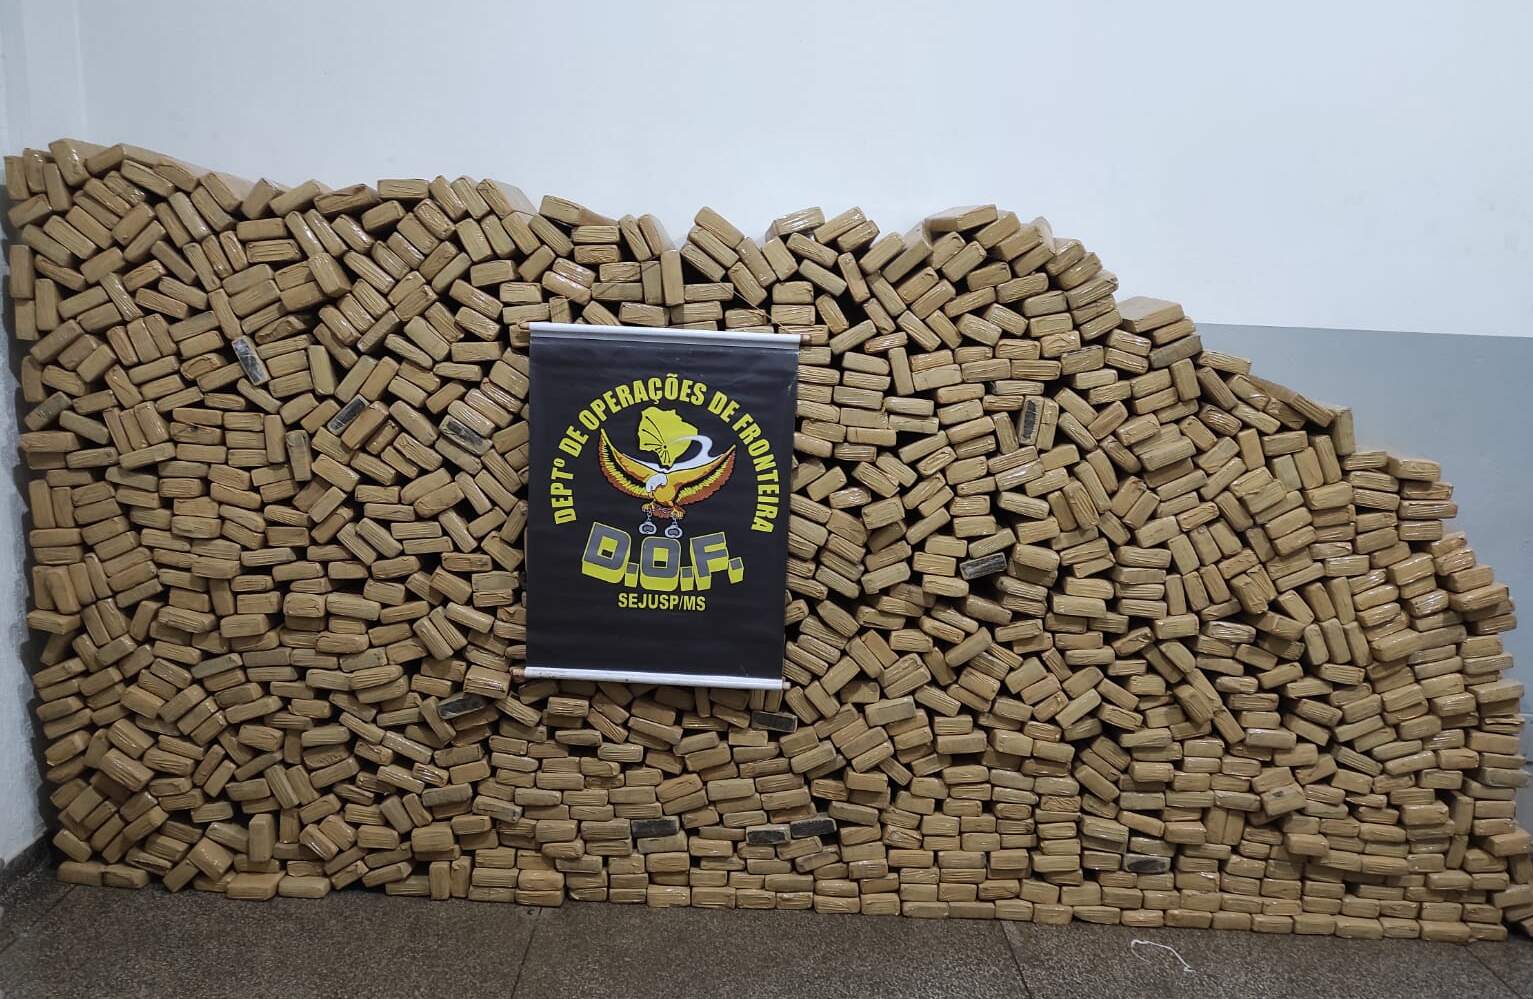 Centenas de tabletes de maconha que foram apreendidos (Foto: Divulgação/DOF)